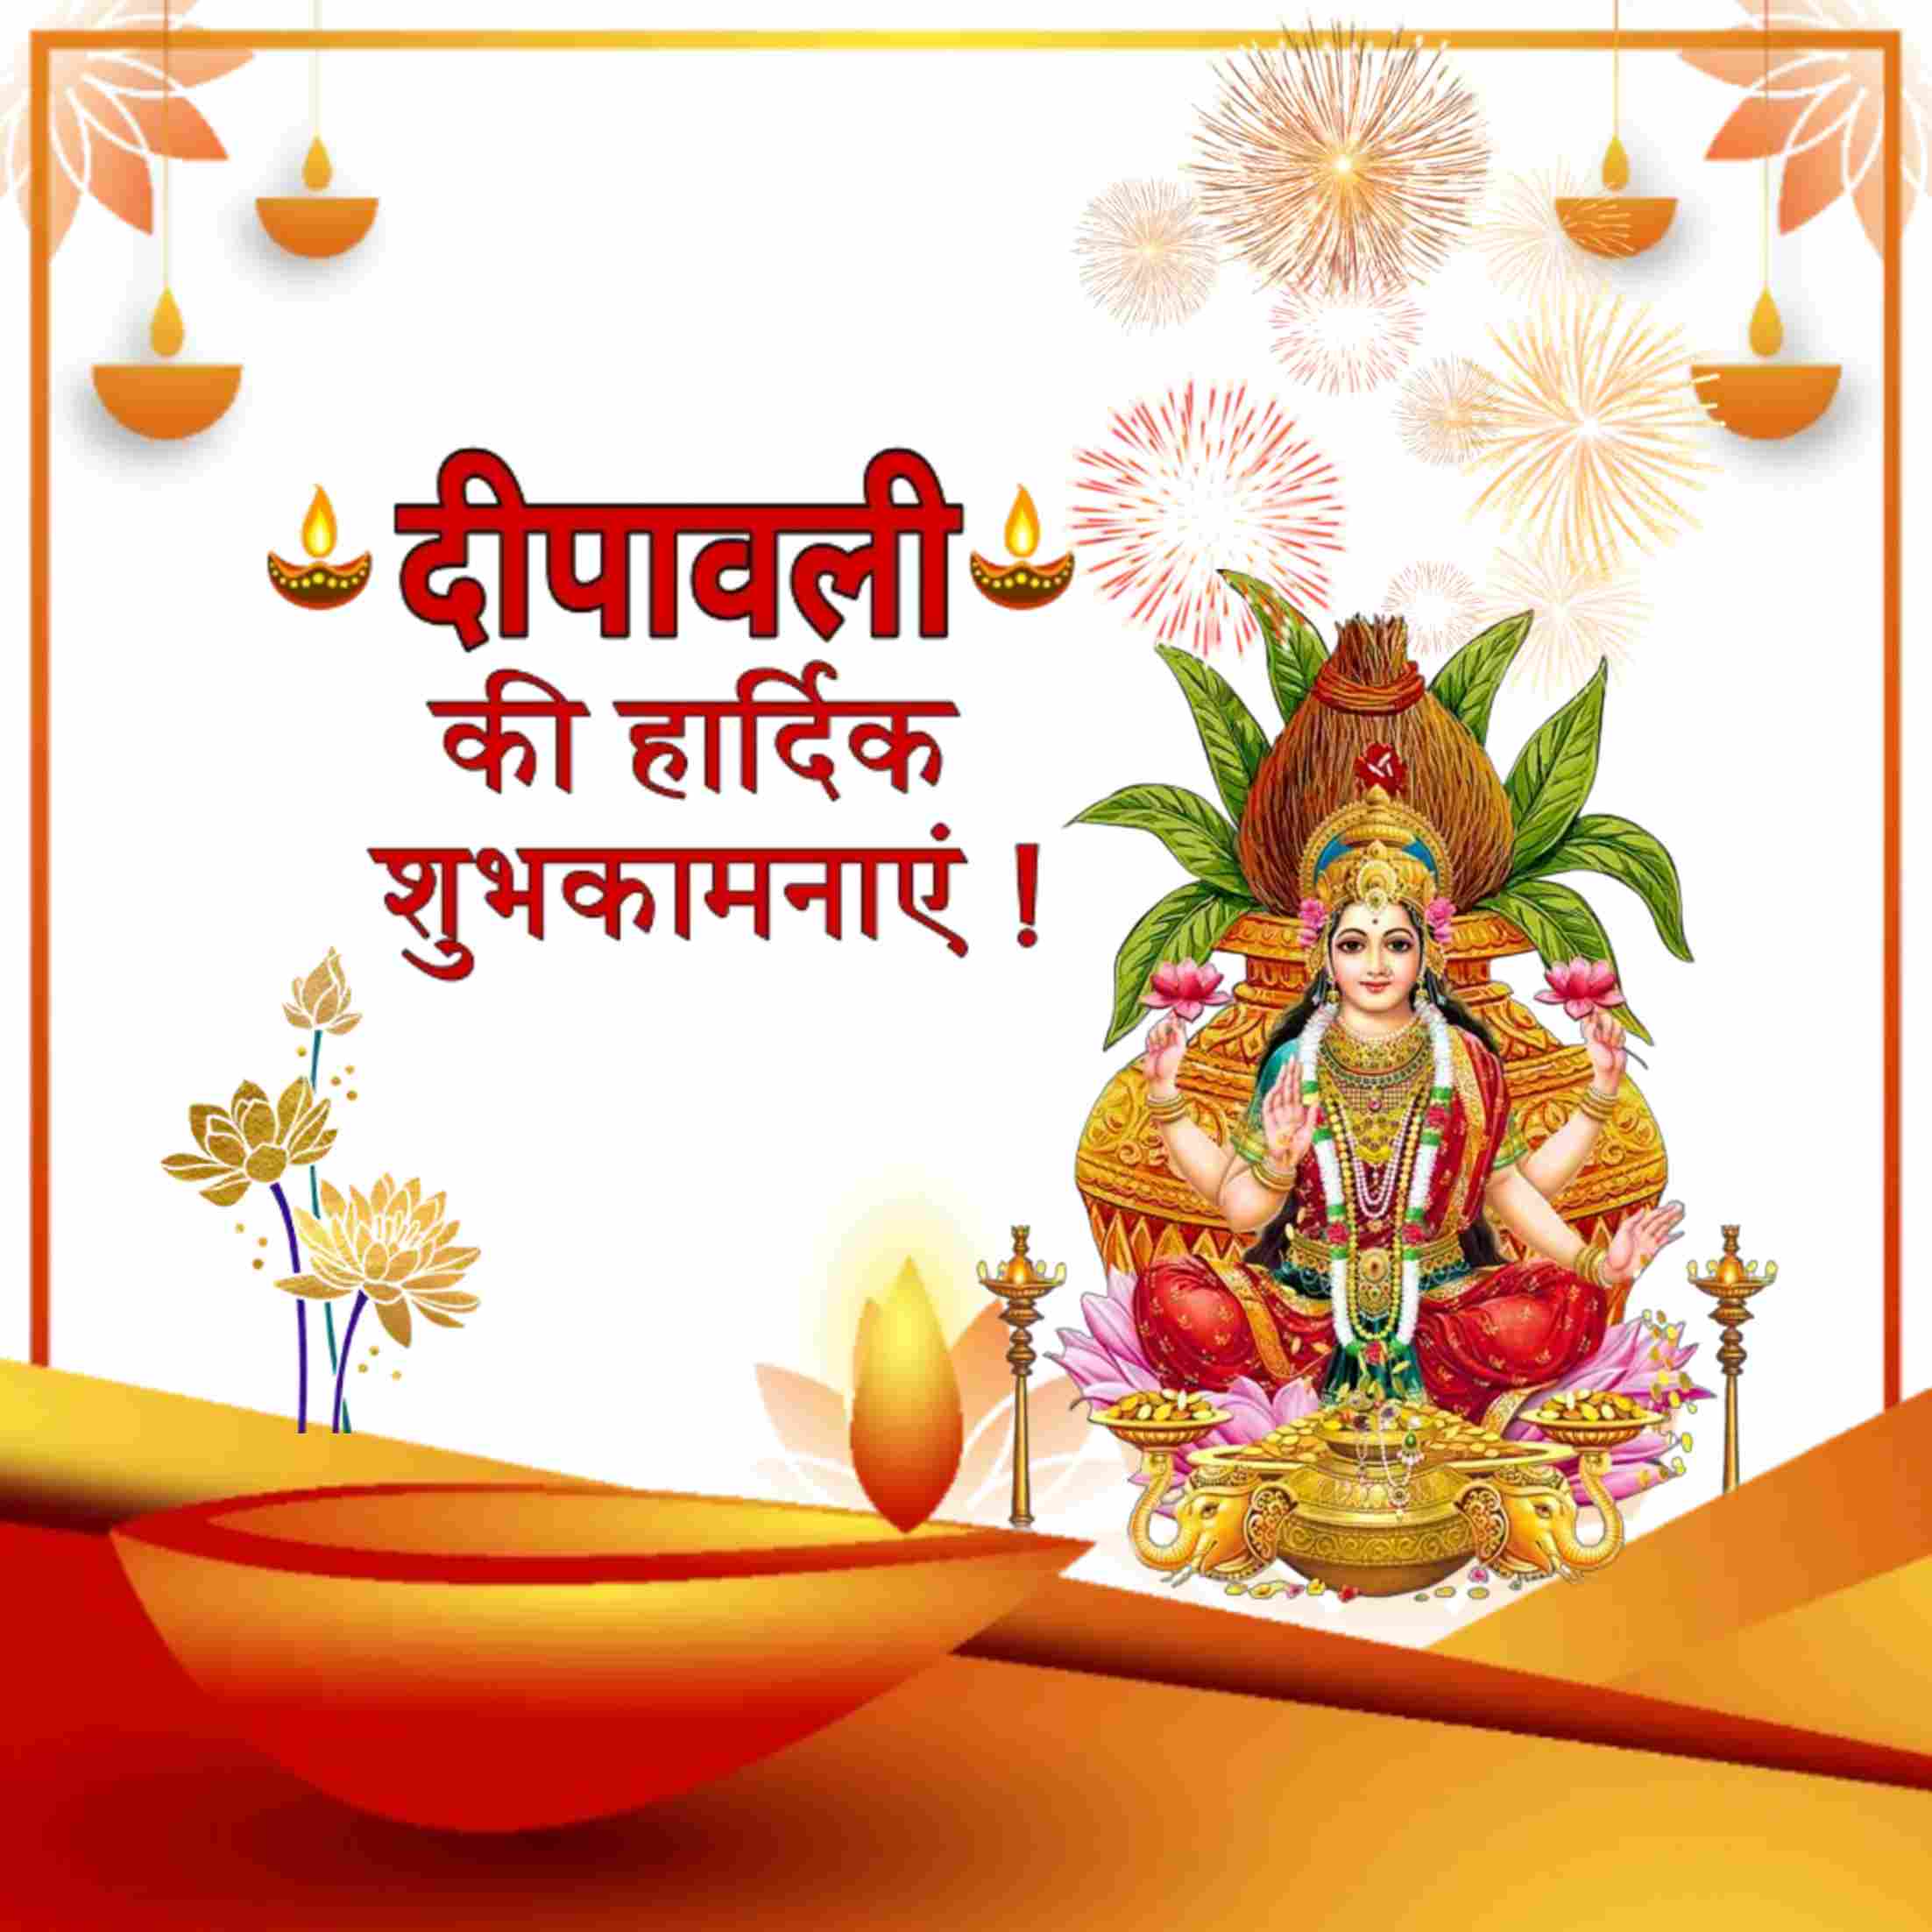 Happy Diwali Wishes Image in Hindi